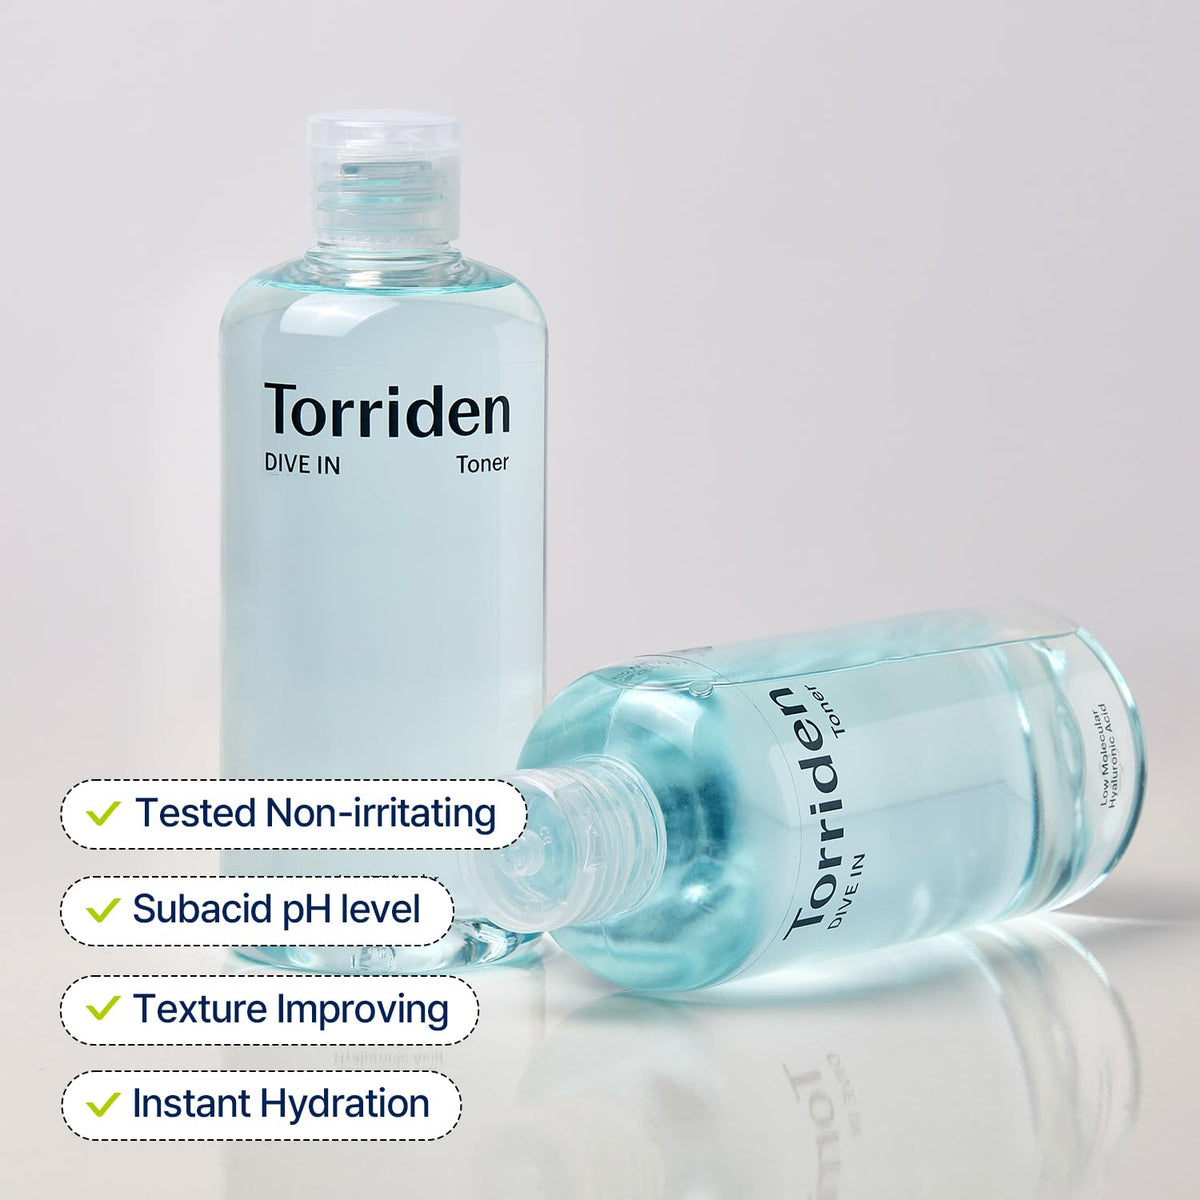 Torriden - Dive In Low Molecule Hyaluronic Acid Toner 300ml